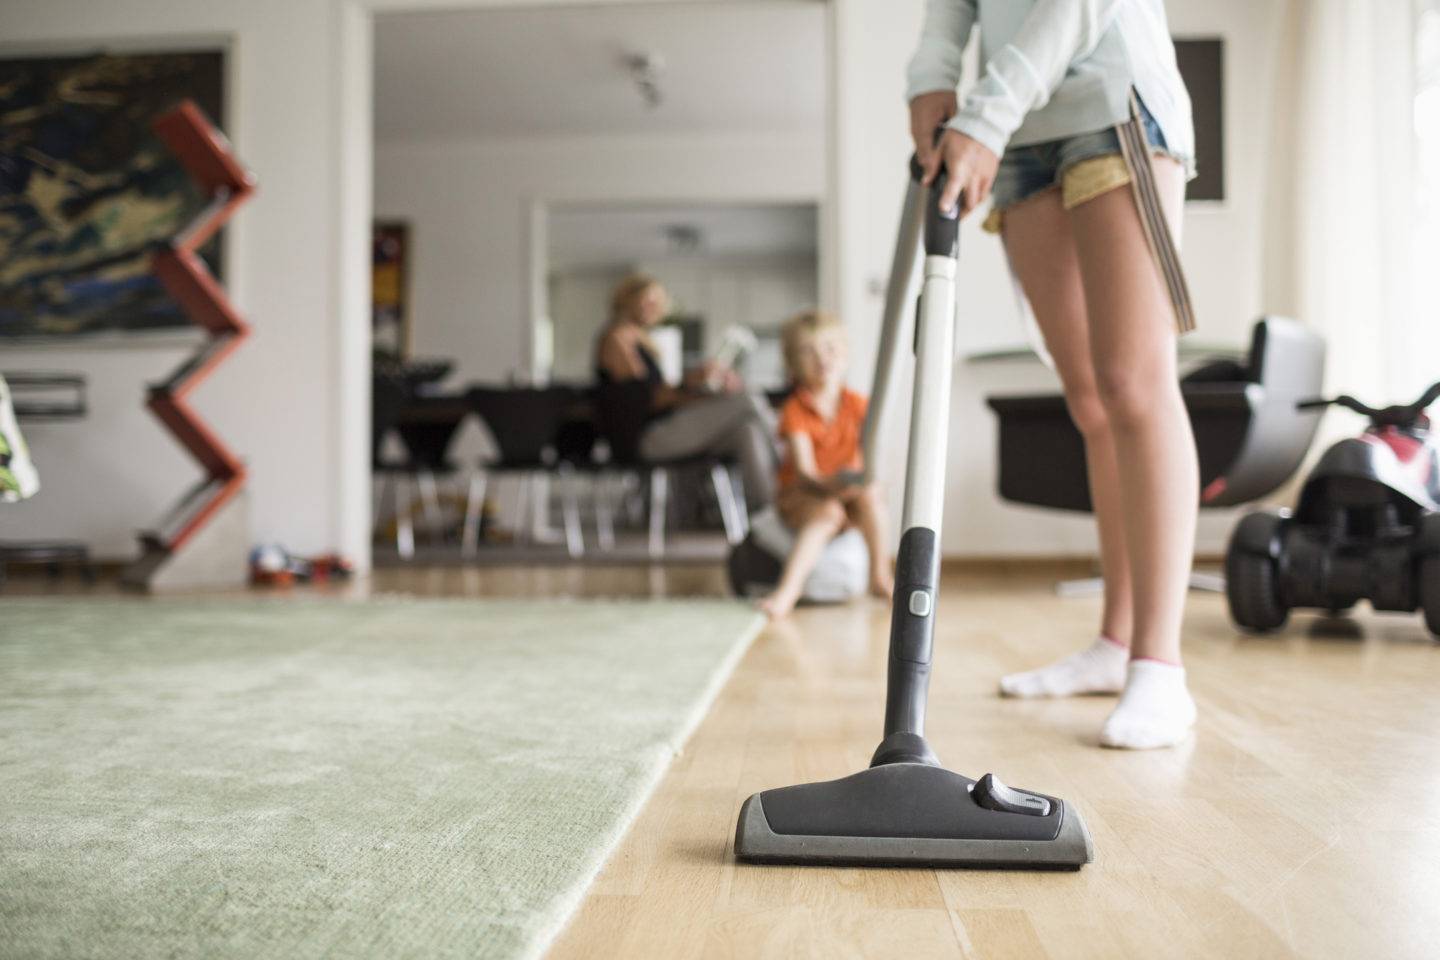 15 главных ошибок, совершаемых при уборке квартиры